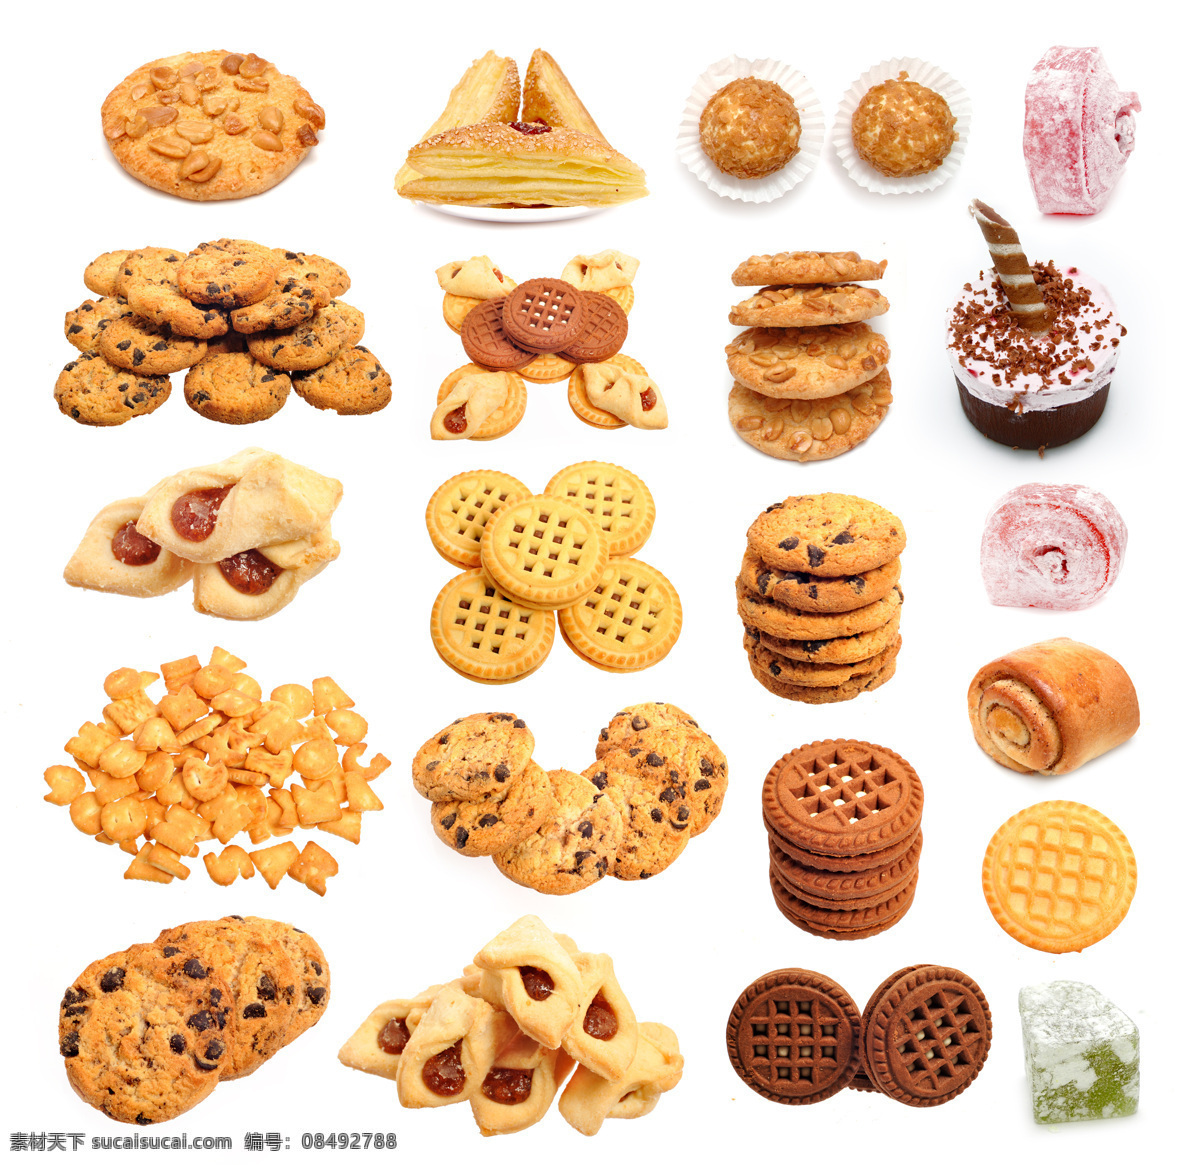 各种 圣诞节 食物 食品 点心 饼干 蛋糕 巧克力 圣诞节图片 生活百科